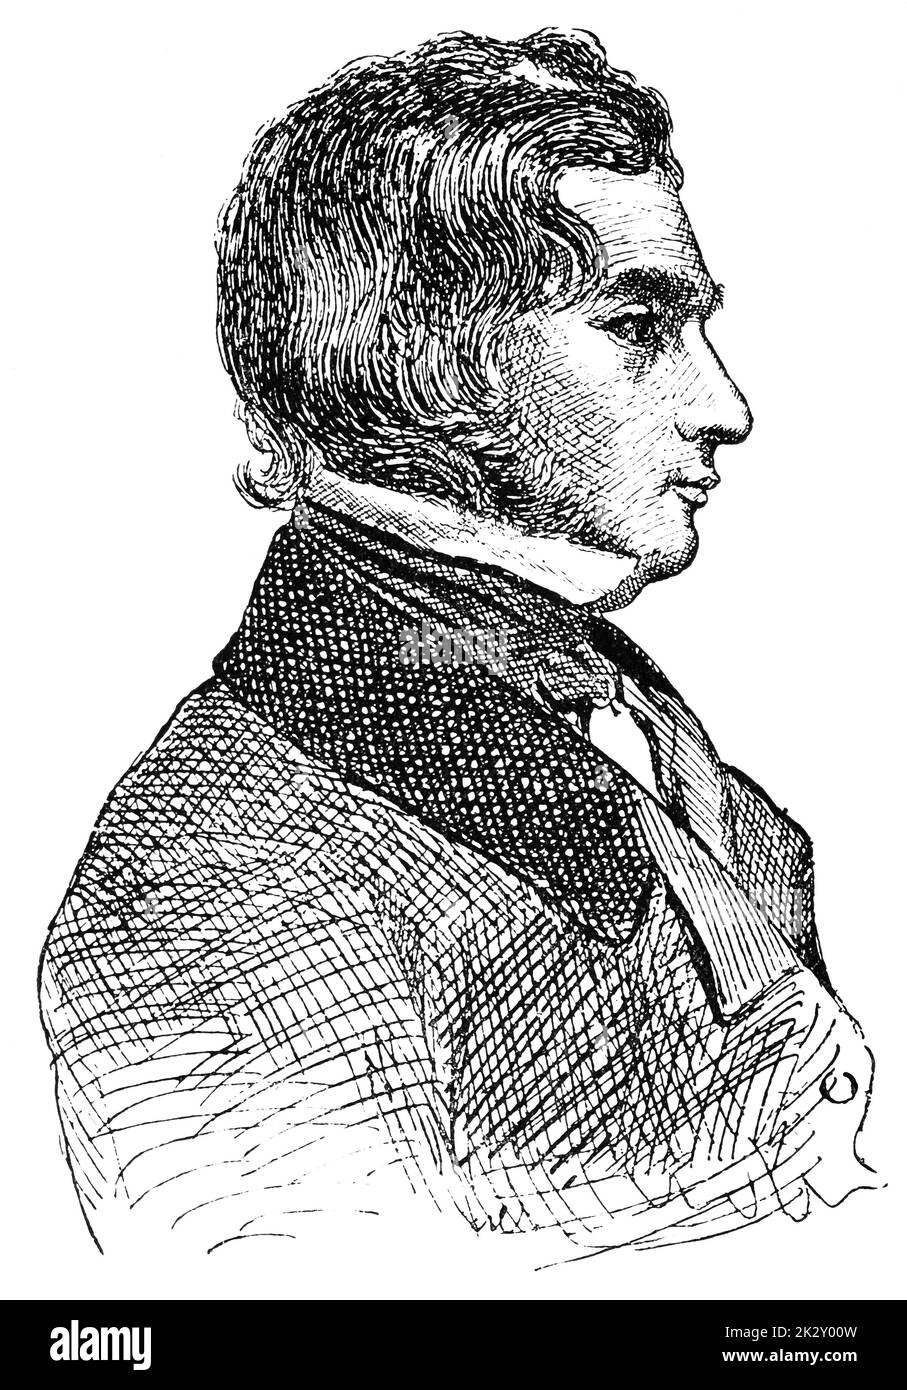 Porträt von Henry Wadsworth Longfellow - ein amerikanischer Dichter und Pädagoge. Illustration des 19. Jahrhunderts. Weißer Hintergrund. Stockfoto